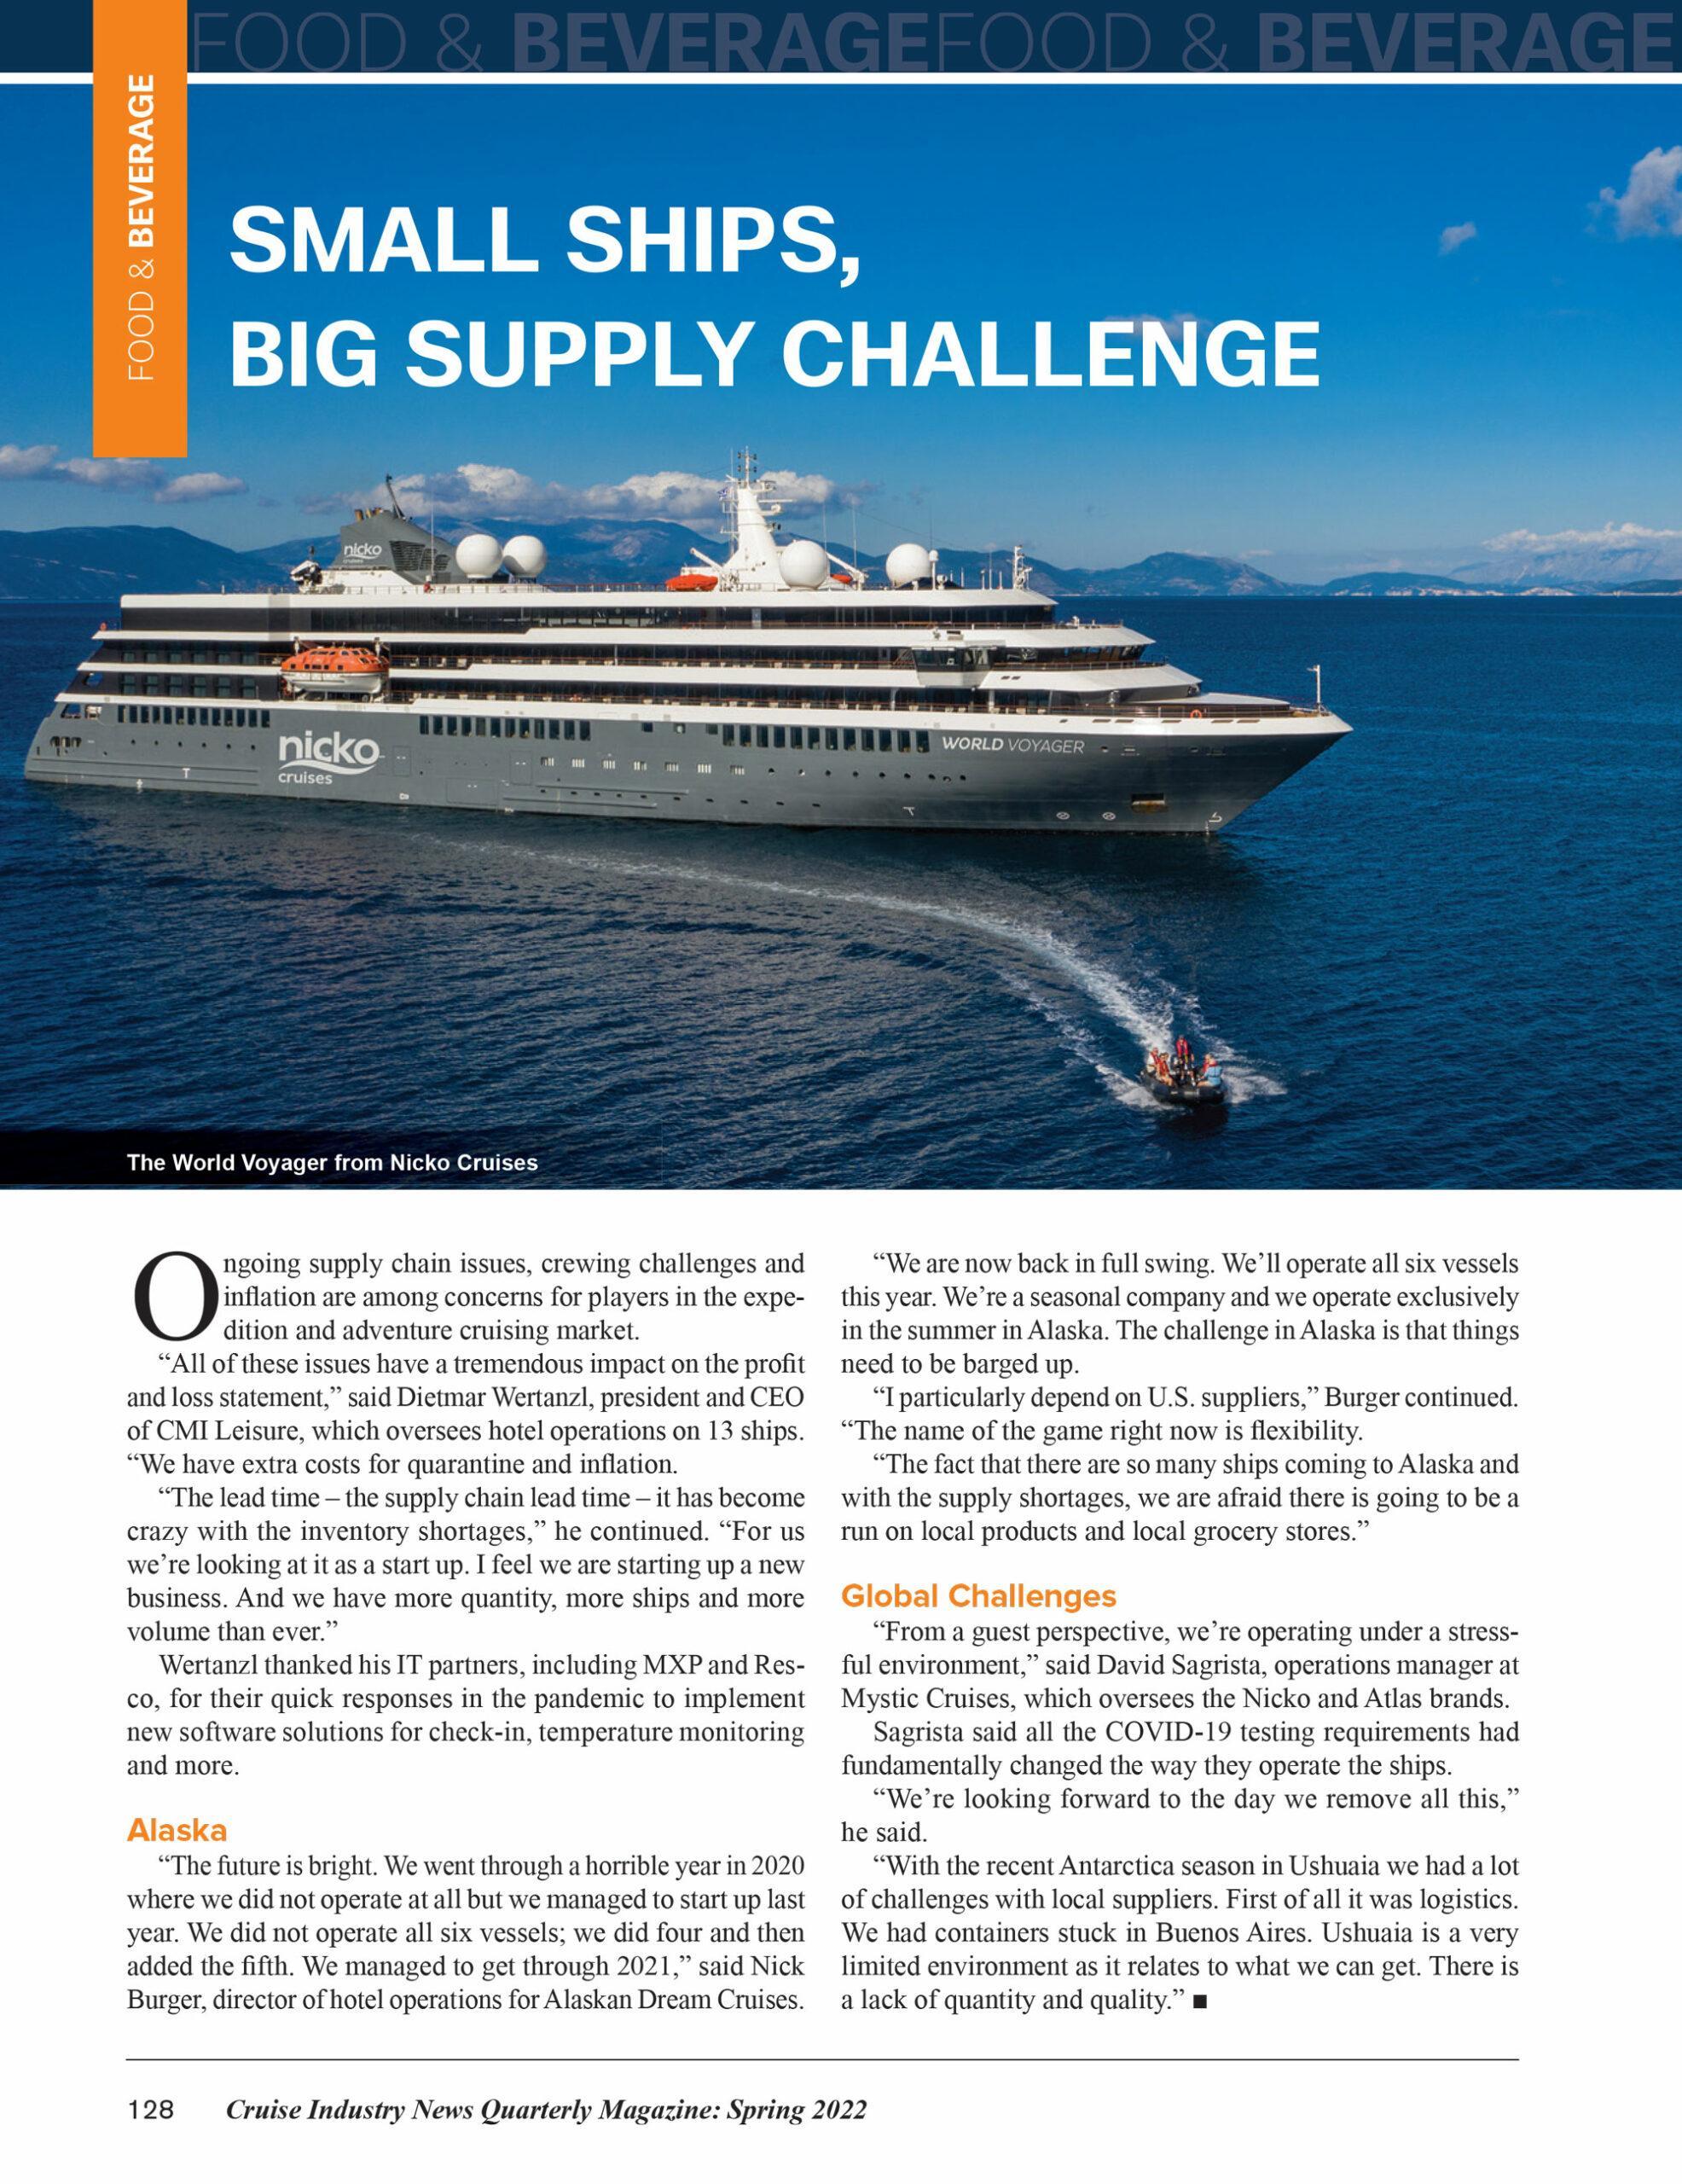 Small Ships, Big Supply Challenge